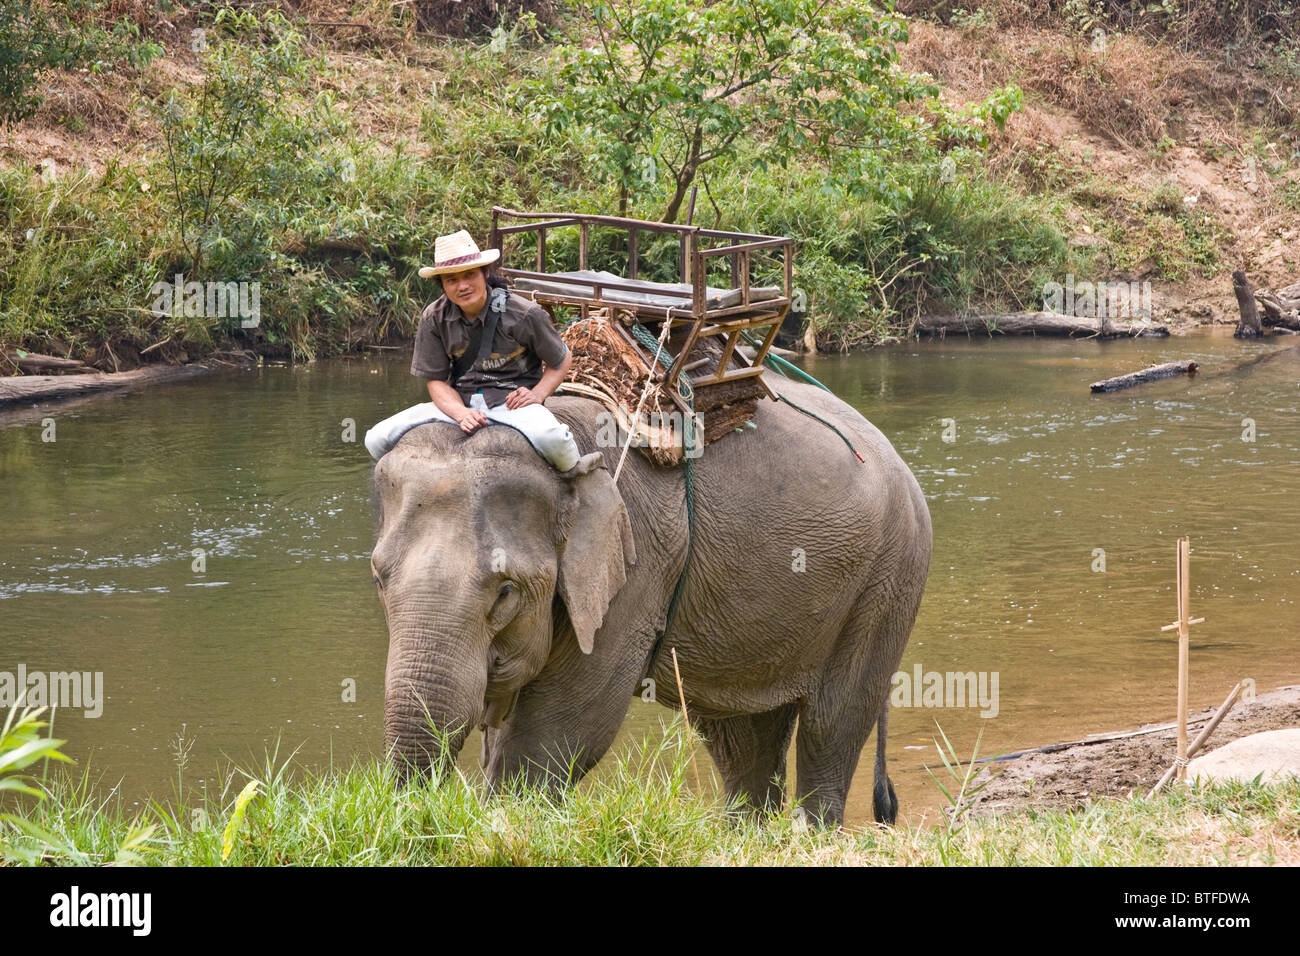 Touristischen Elefantenritt, einer der vielen touristischen Aktivitäten in und entlang dem Mae Taeng Fluss in Chiang Mai Gegend von Nord-Thailand Stockfoto